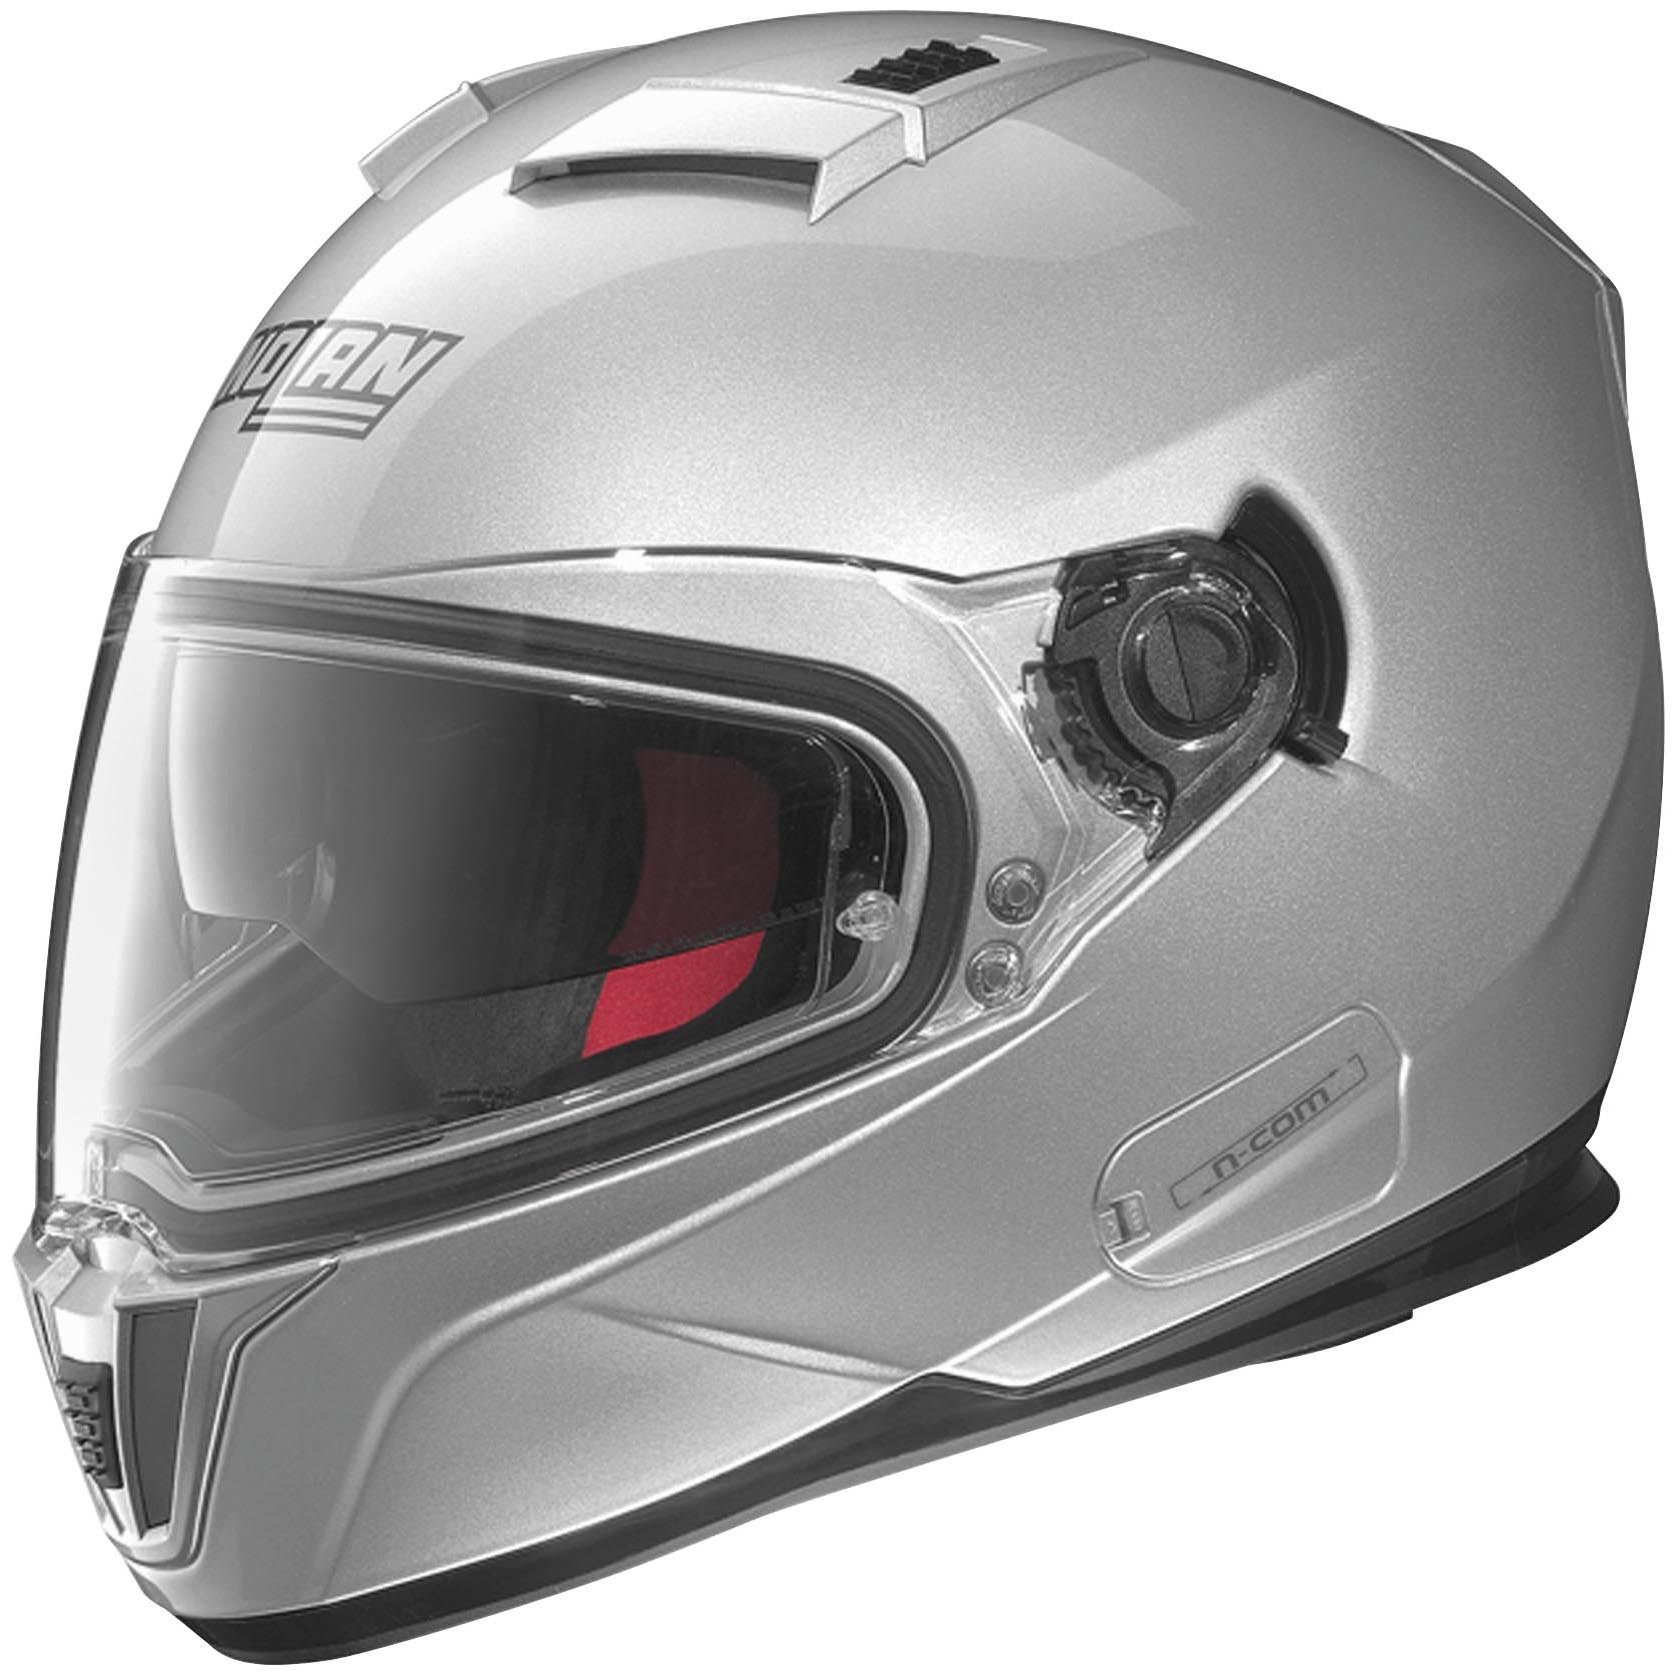 Nolan N86 Motorcycle Helmet Review